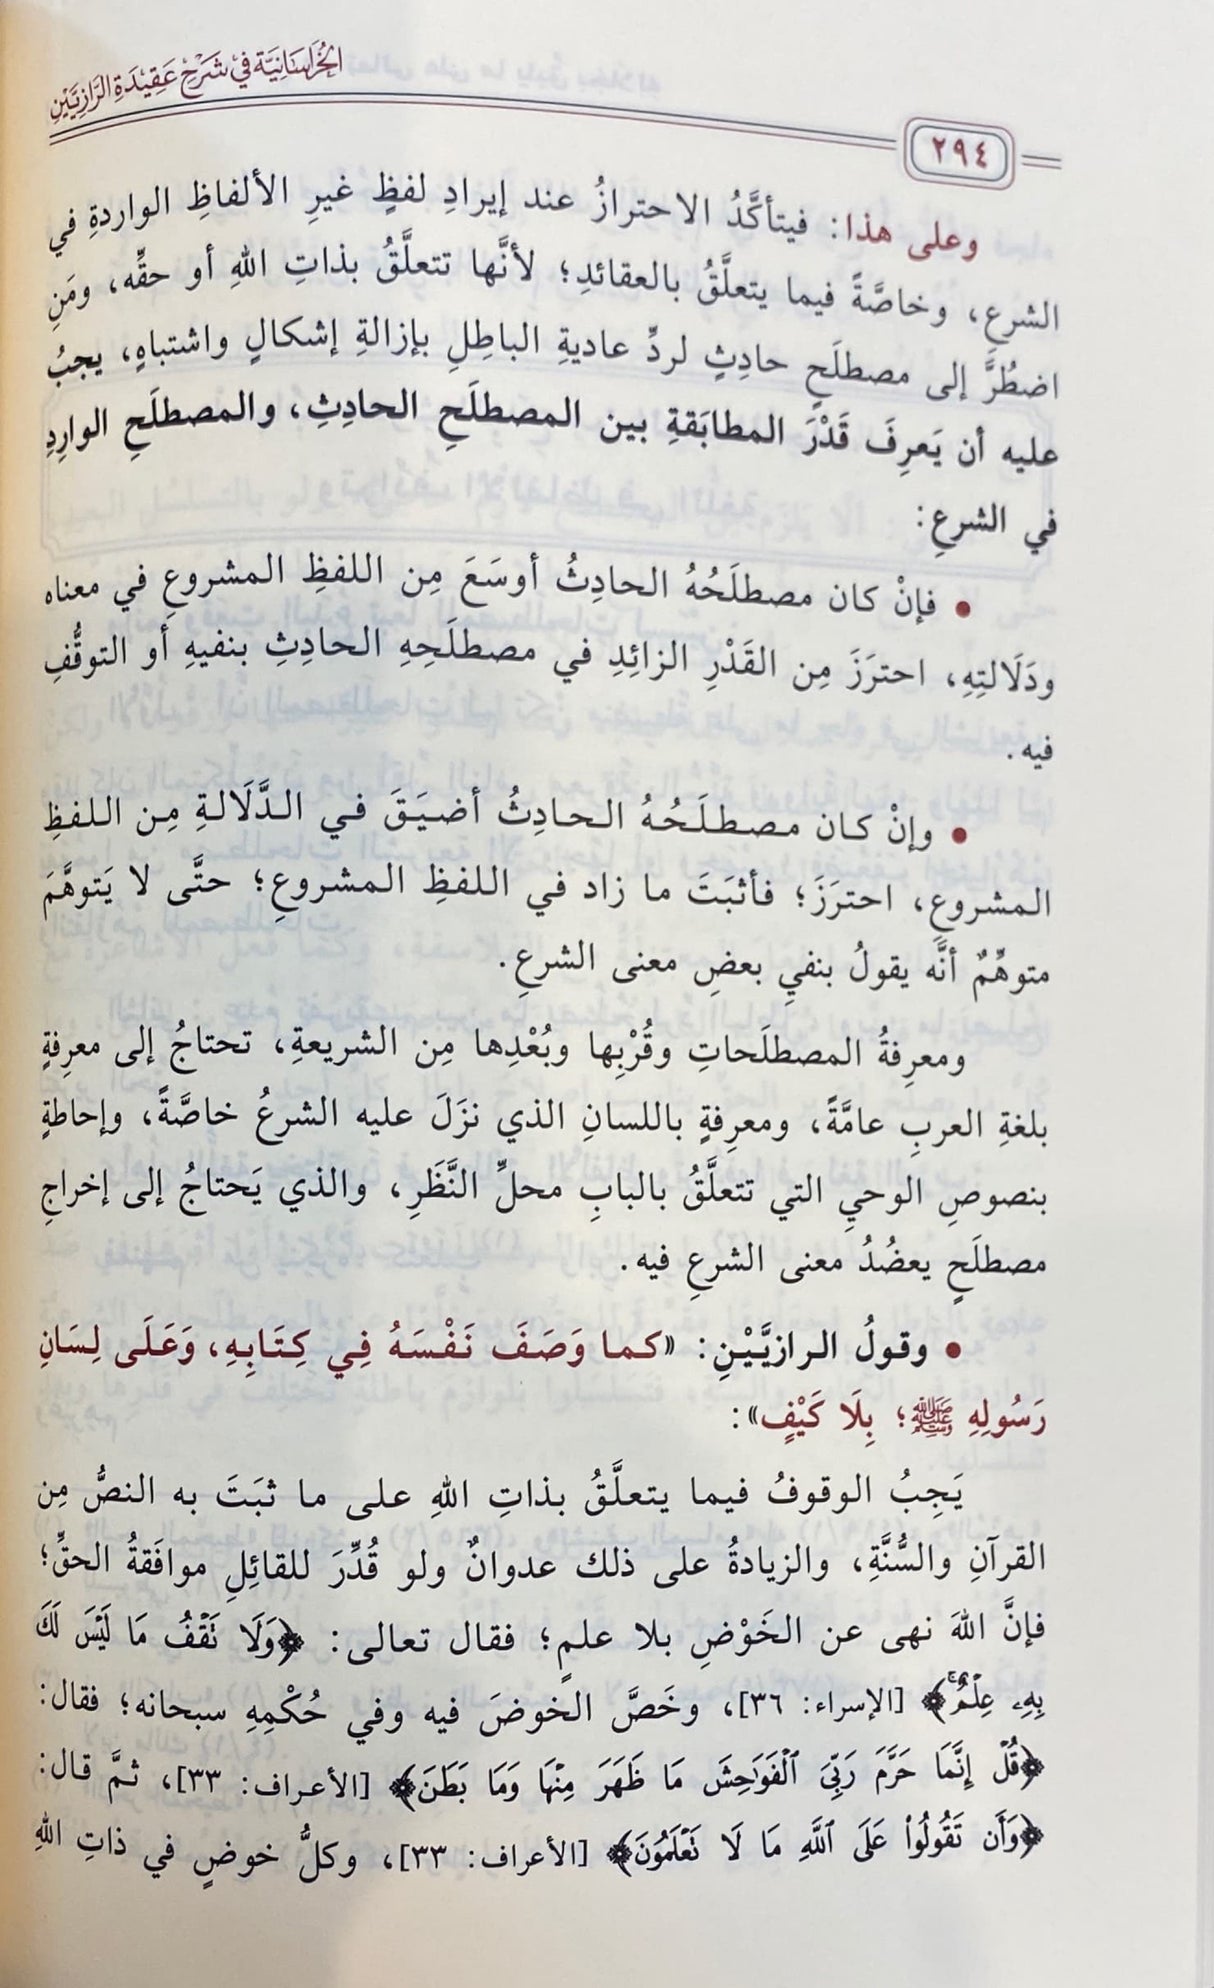 الخراسانية في شرح عقيدة الرازيين Al Khurasaniya